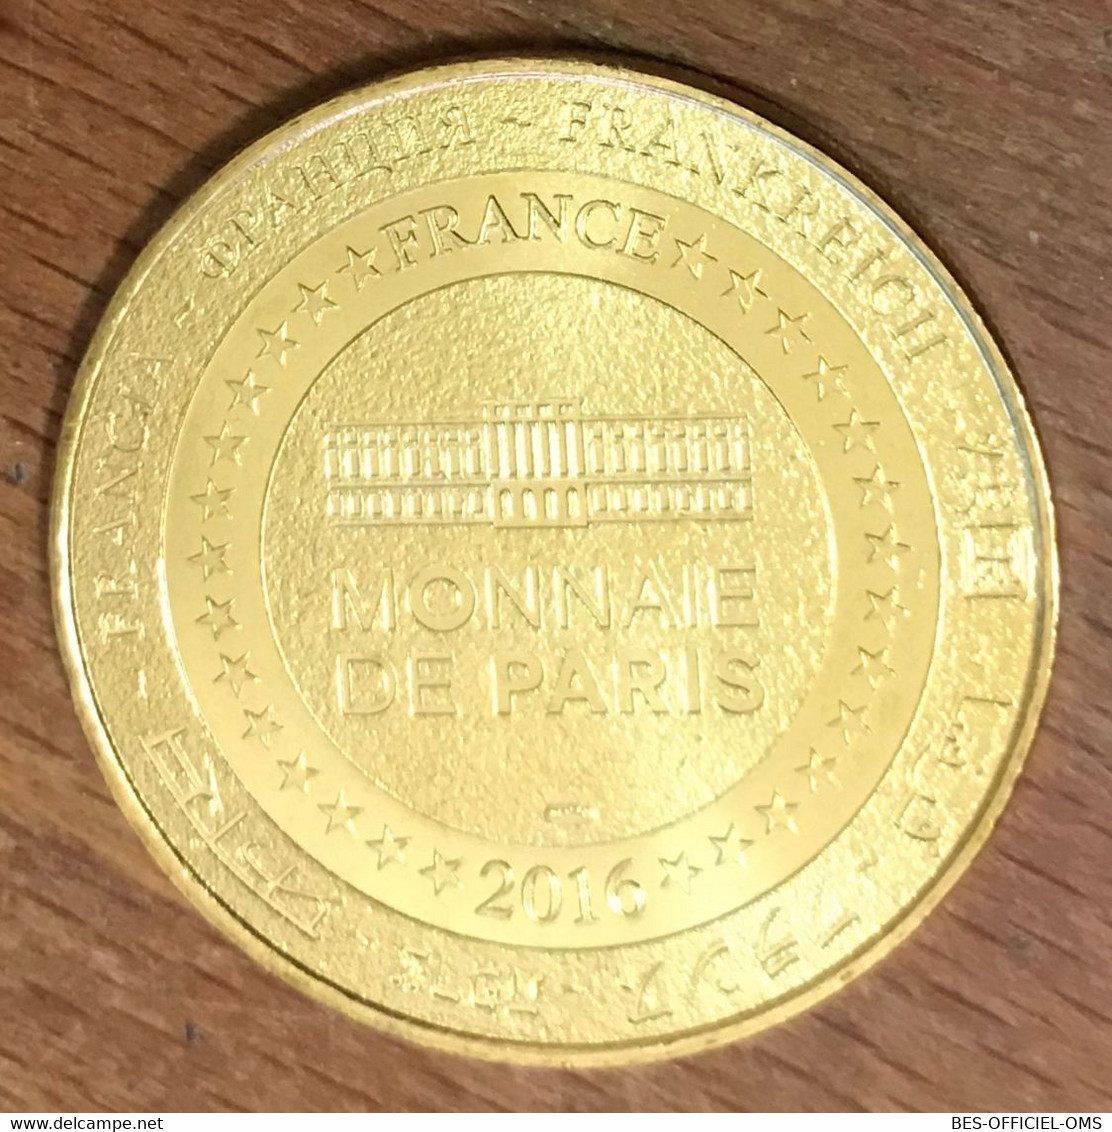 25 CITADELLE DE BESANÇON UNESCO MDP 2016 MEDAILLE SOUVENIR MONNAIE DE PARIS JETON TOURISTIQUE MEDALS COINS TOKENS - 2016